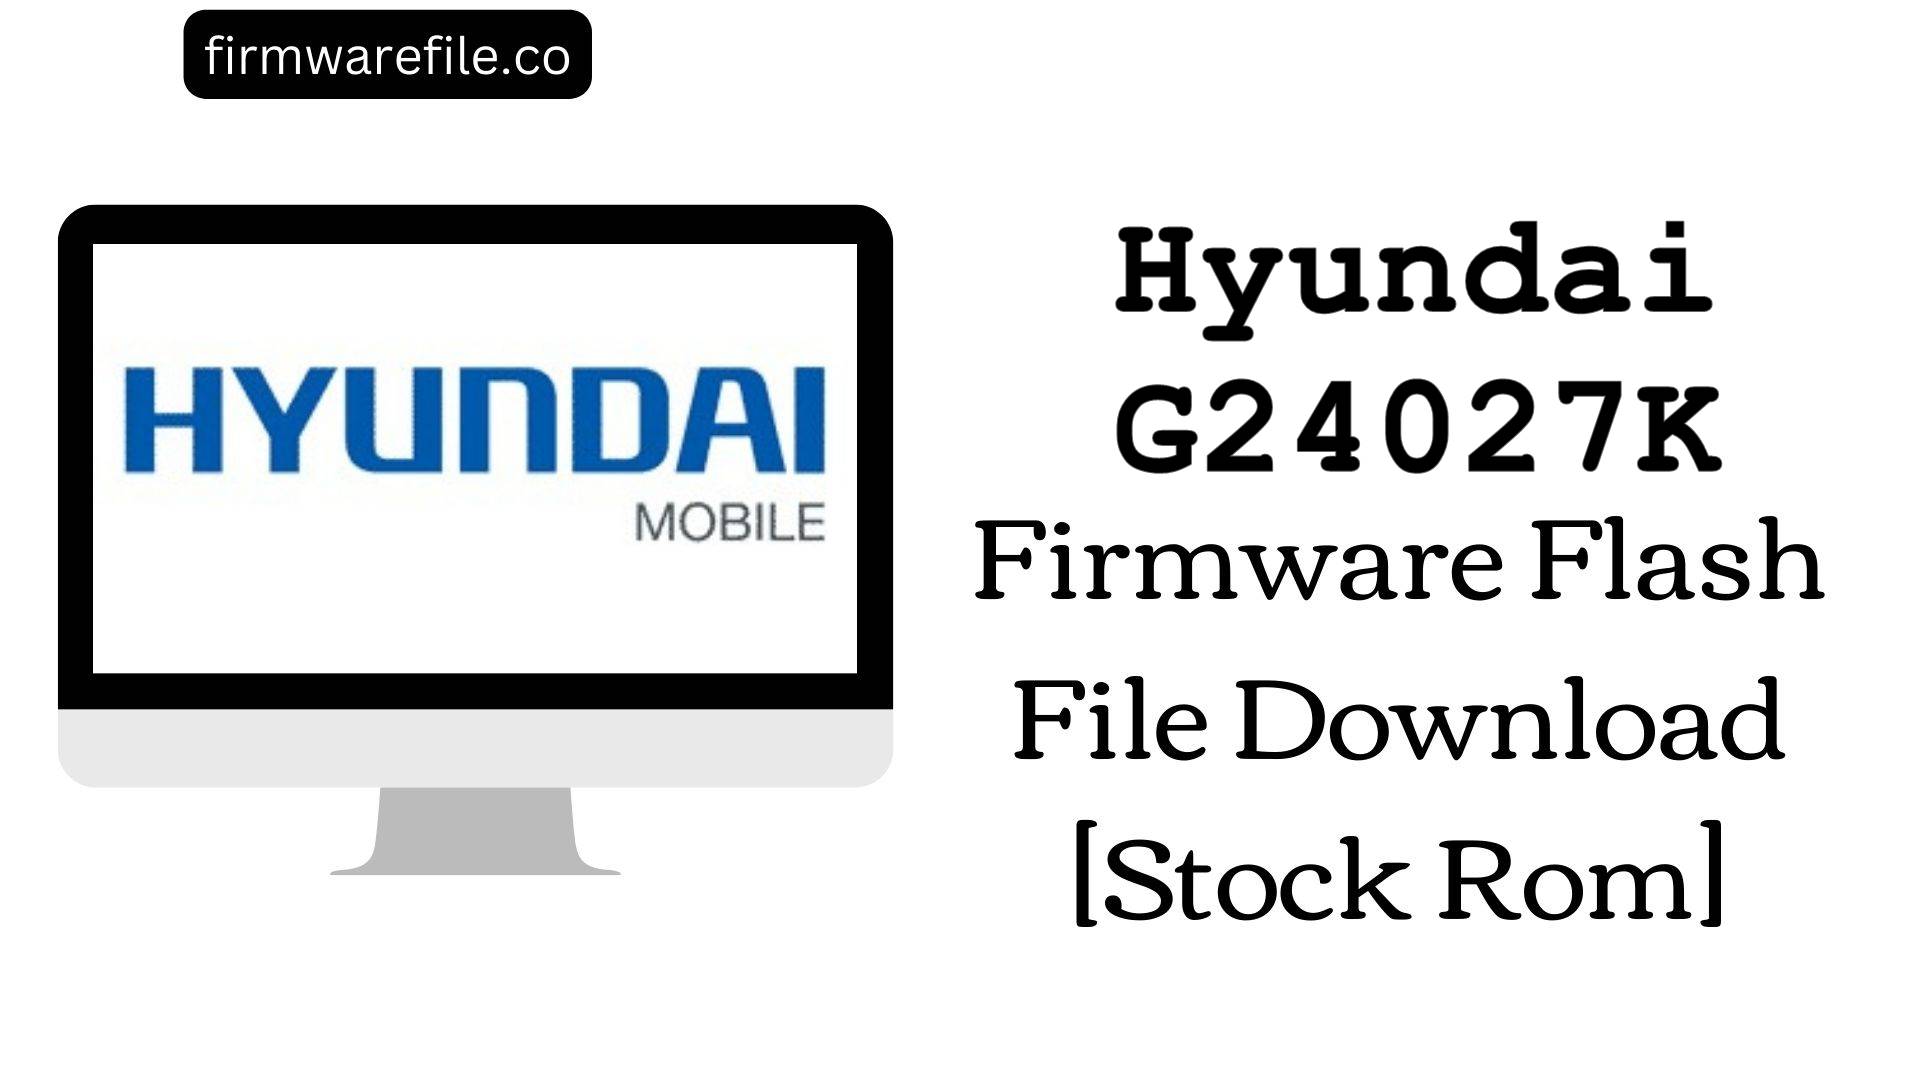 Hyundai G24027K